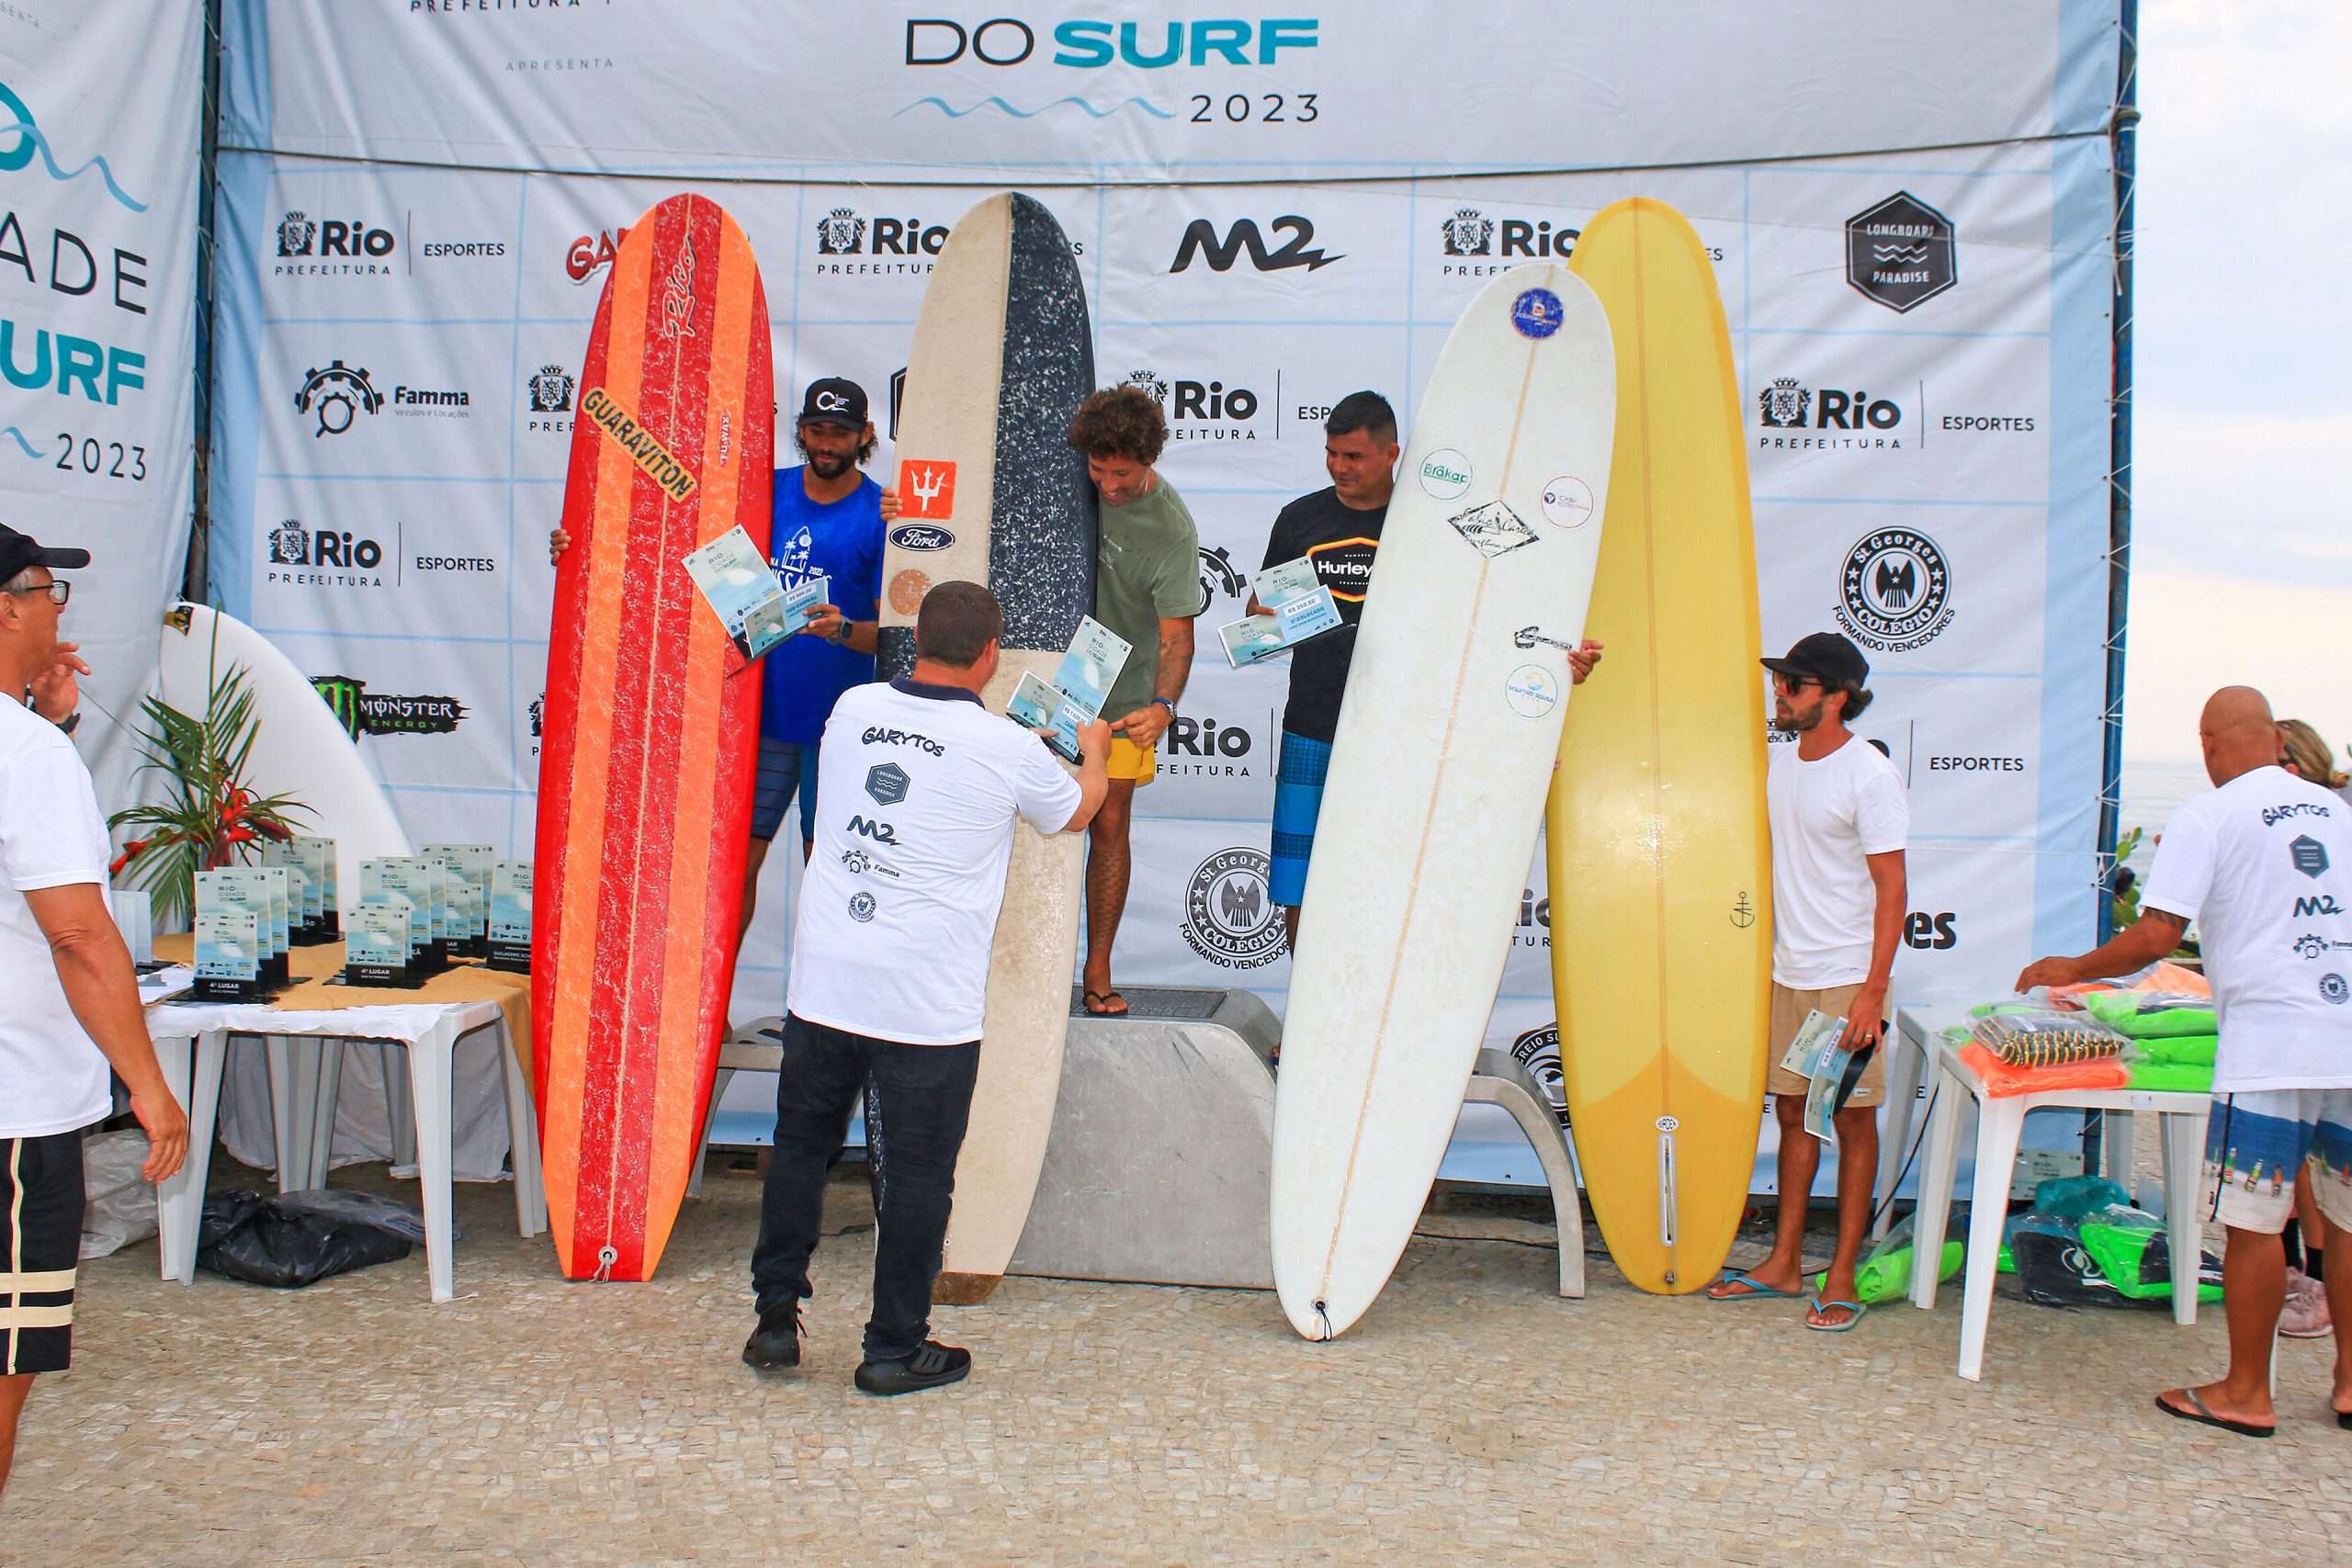 Pódio Pódio Long Open Masculino, Rio Cidade do Surf, Praia da Macumba. Foto: Luciano Cabal.